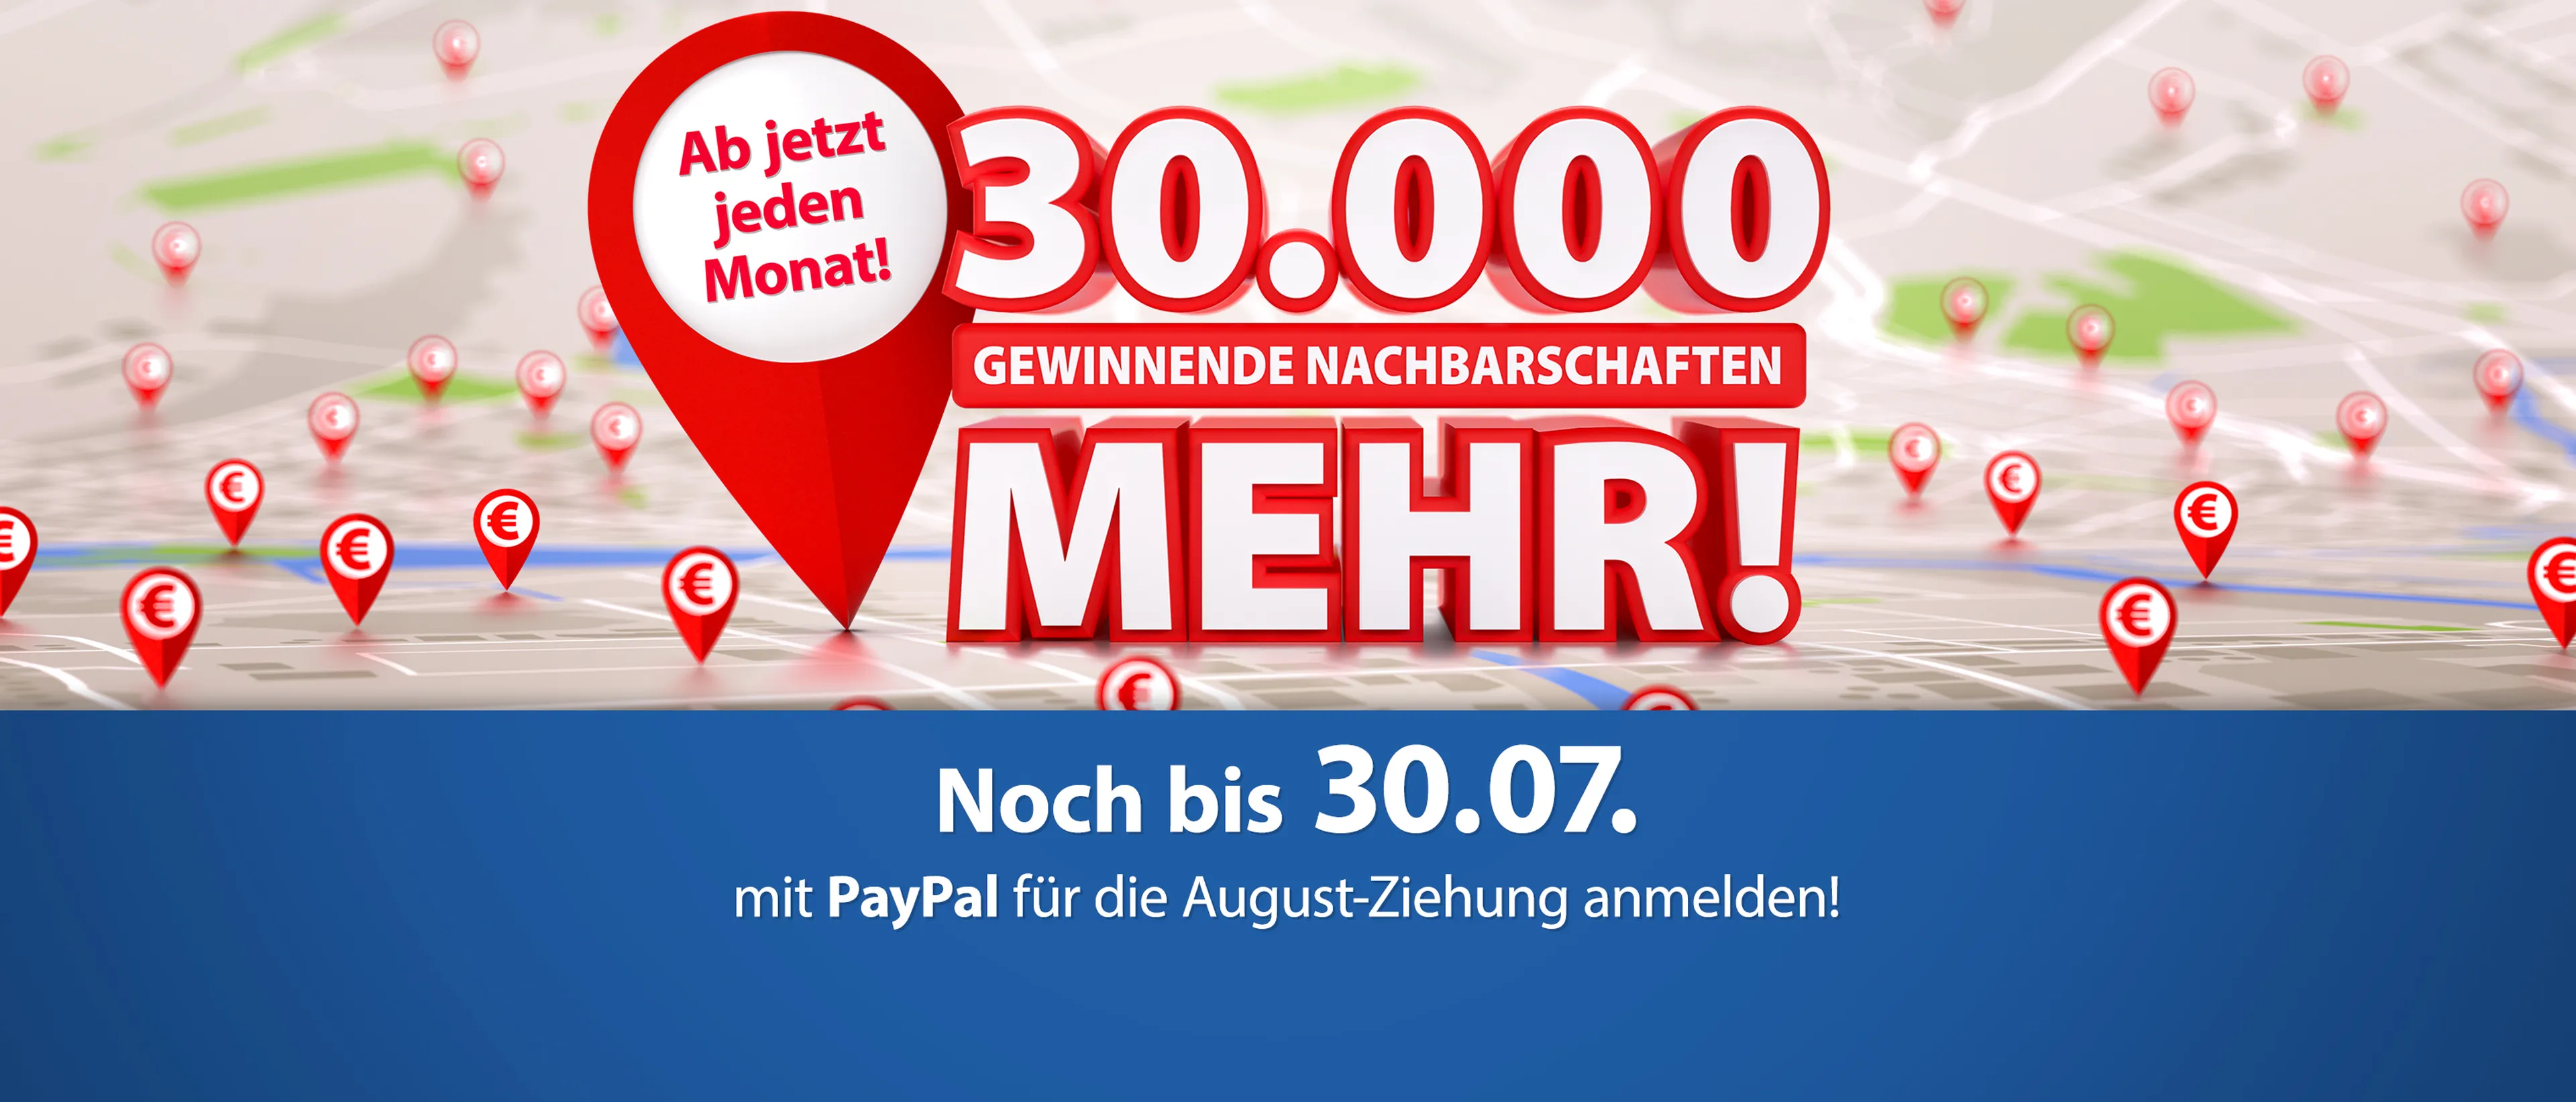 Noch bis zum 30.07. für die August-Ziehung der Deutschen Postcode Lotterie anmelden!